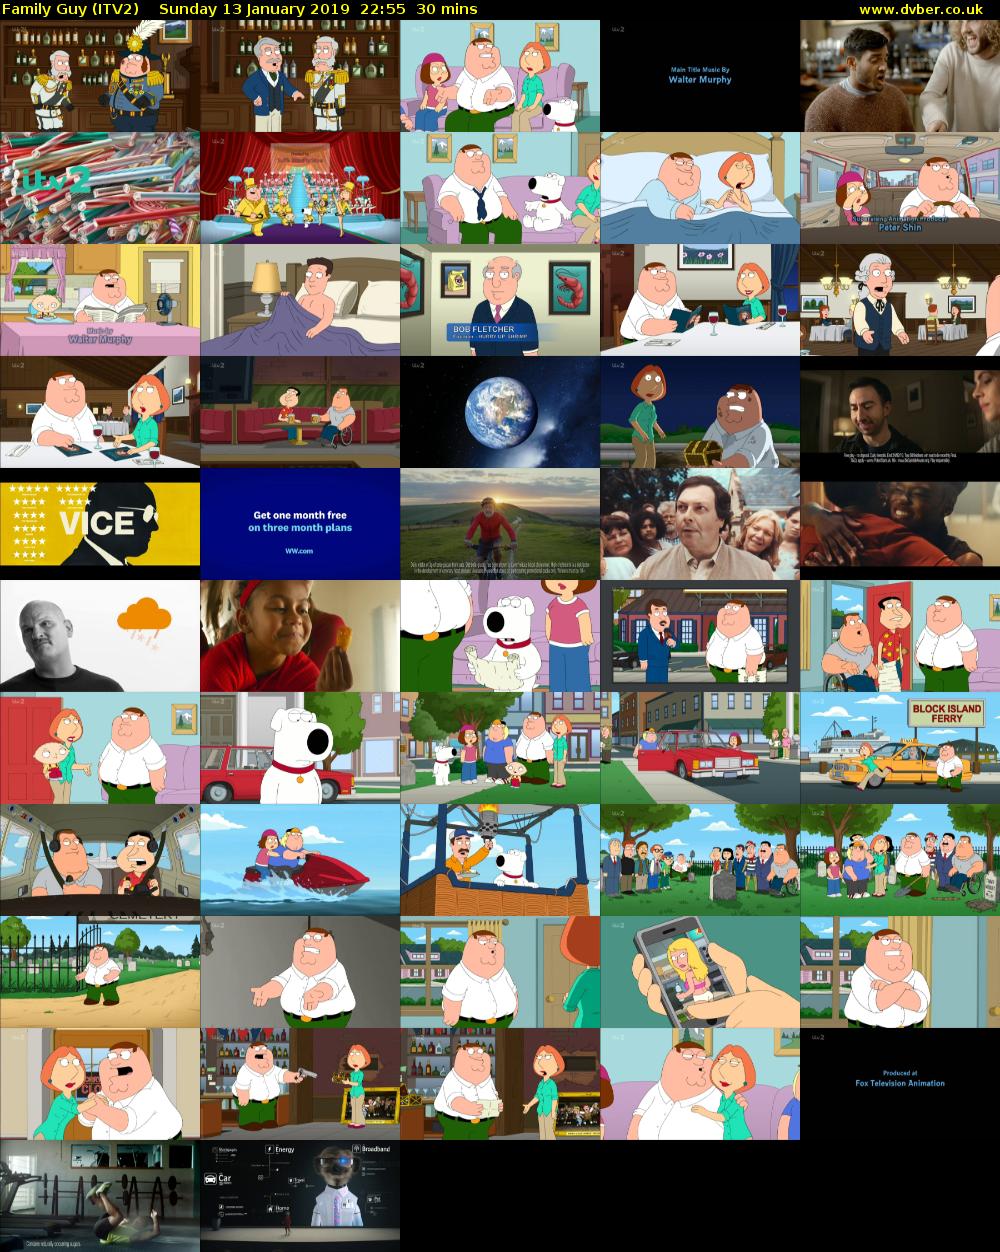 Family Guy (ITV2) Sunday 13 January 2019 22:55 - 23:25